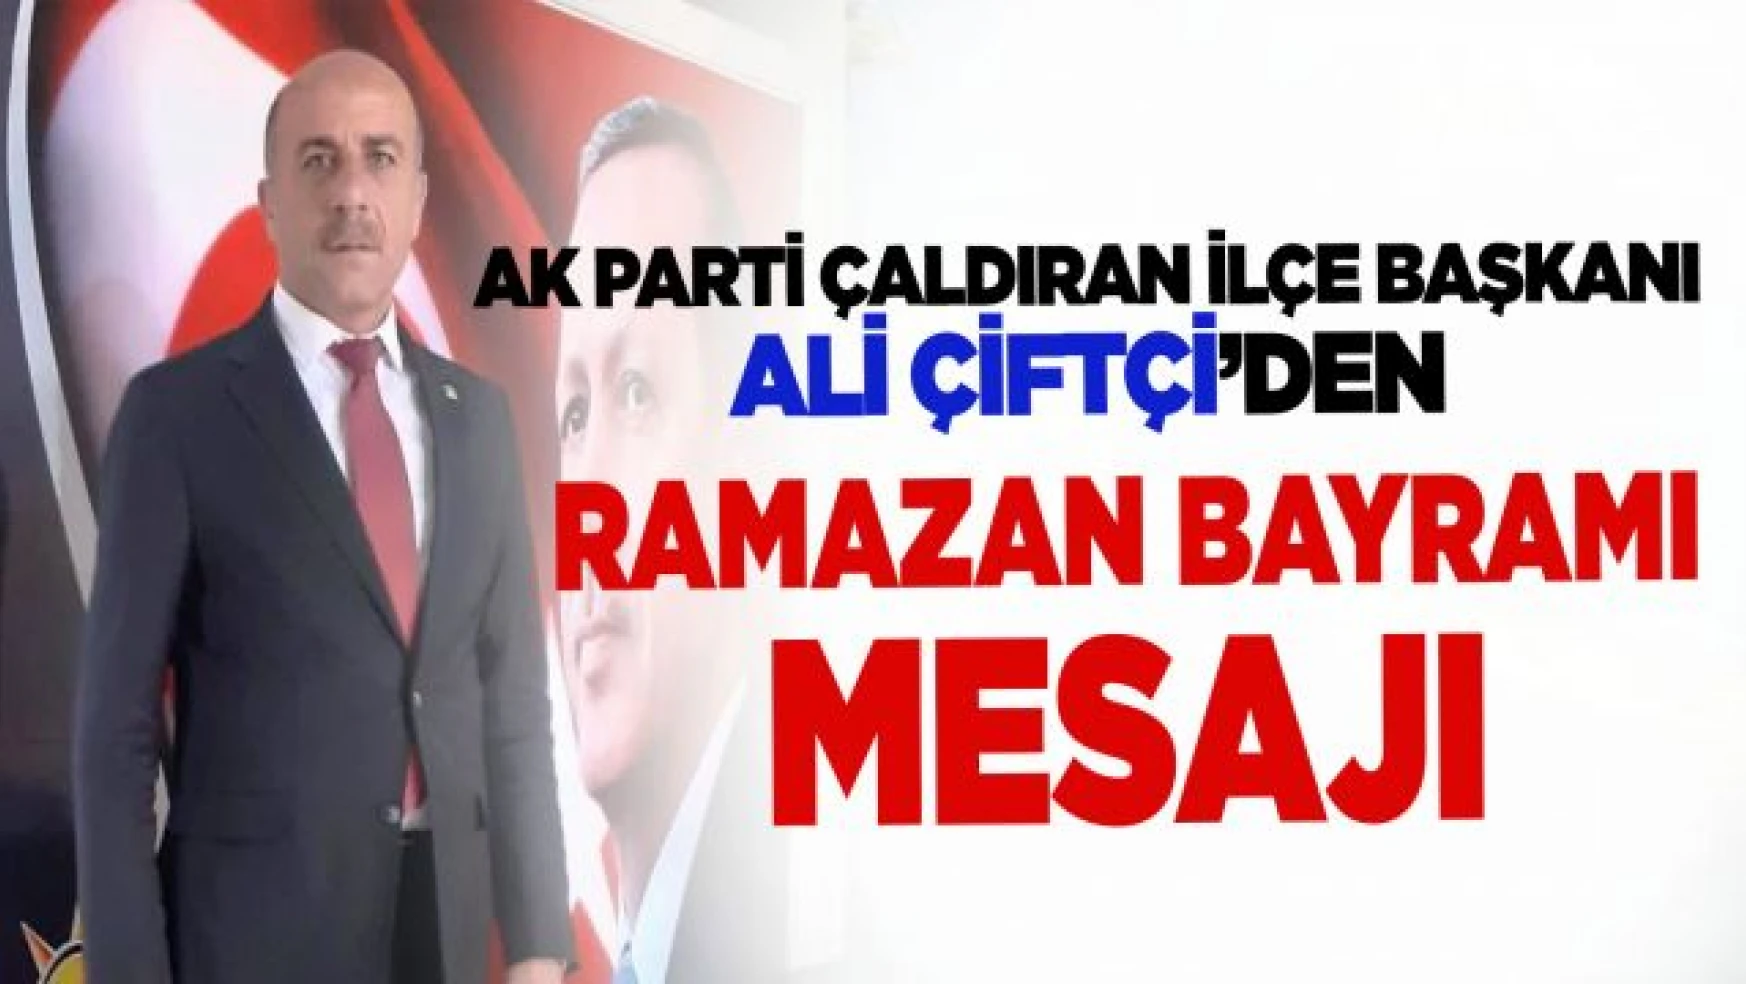 AK Parti Çaldıran İlçe Başkanı Çiftçi'den Ramazan Bayramı Mesajı 